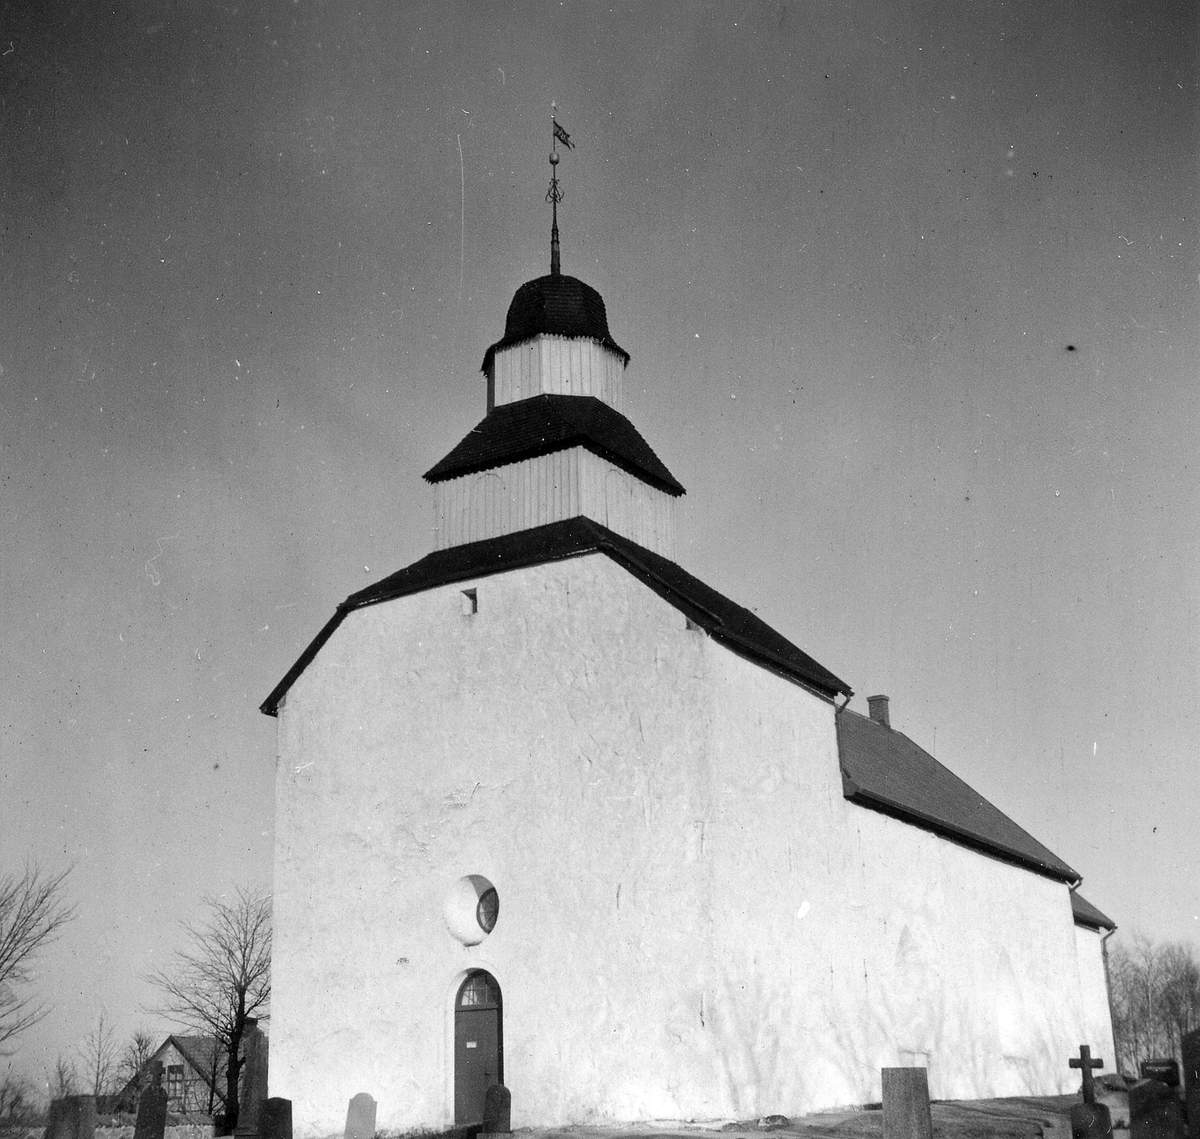 Skummeslövs sn. Skummeslövs kyrka och kyrkogård.